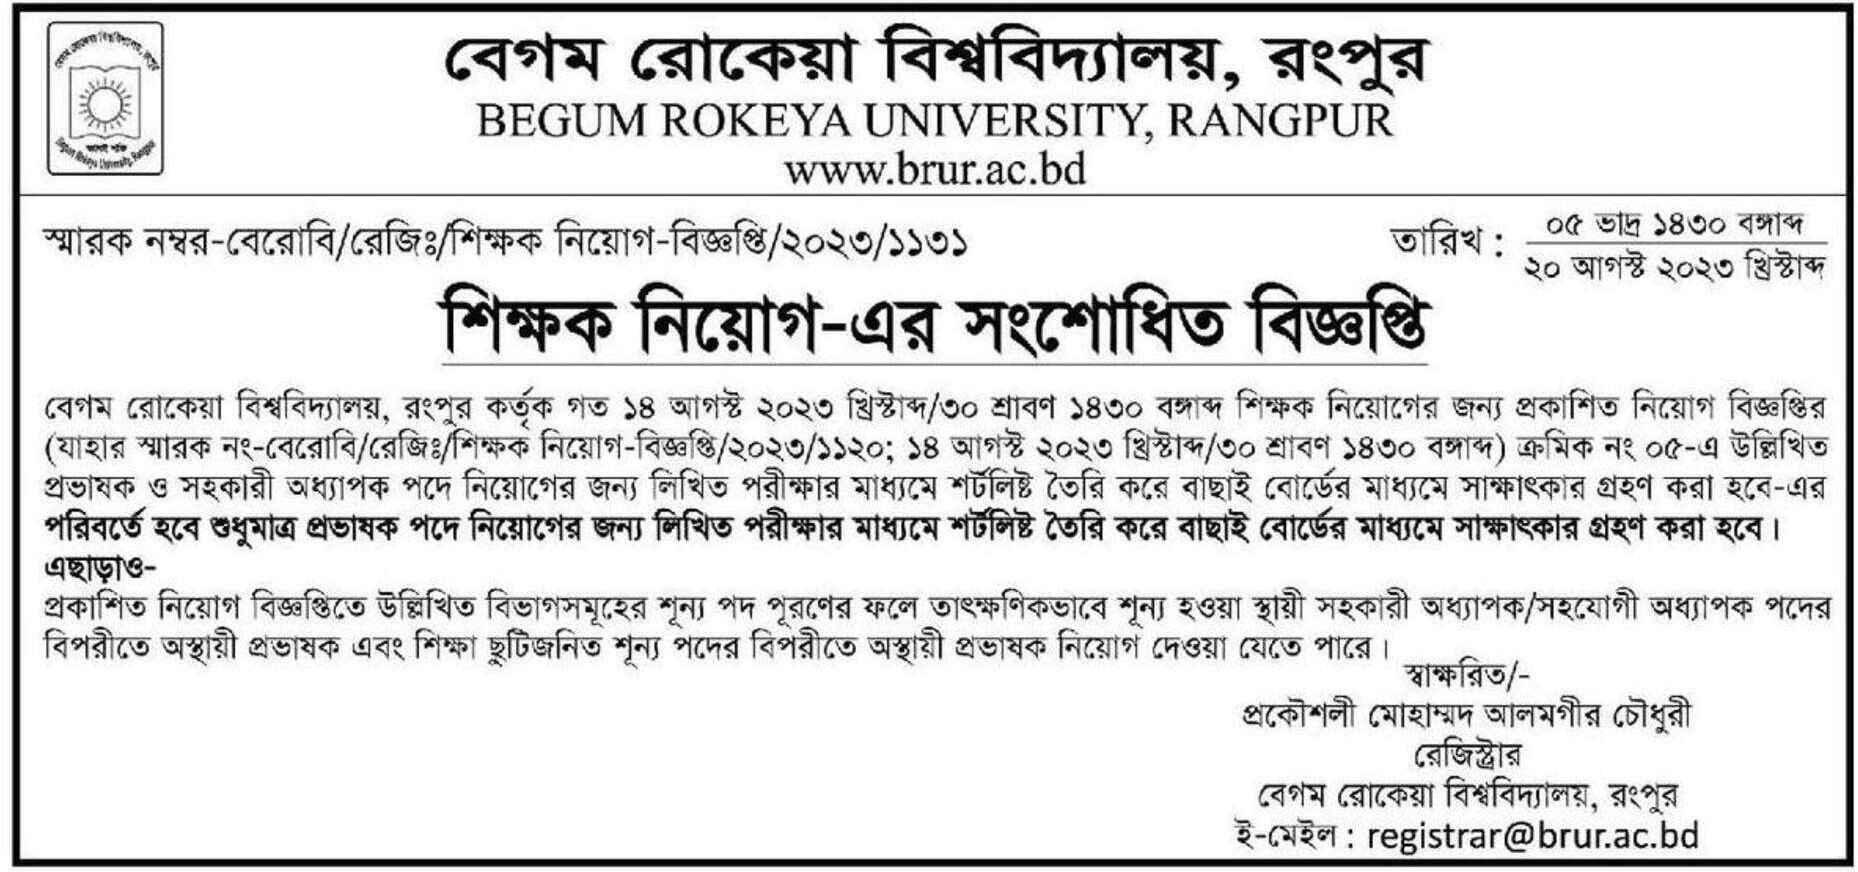 Job Circular of Begum Rokeya University | Begum Rokeya University Job Circular